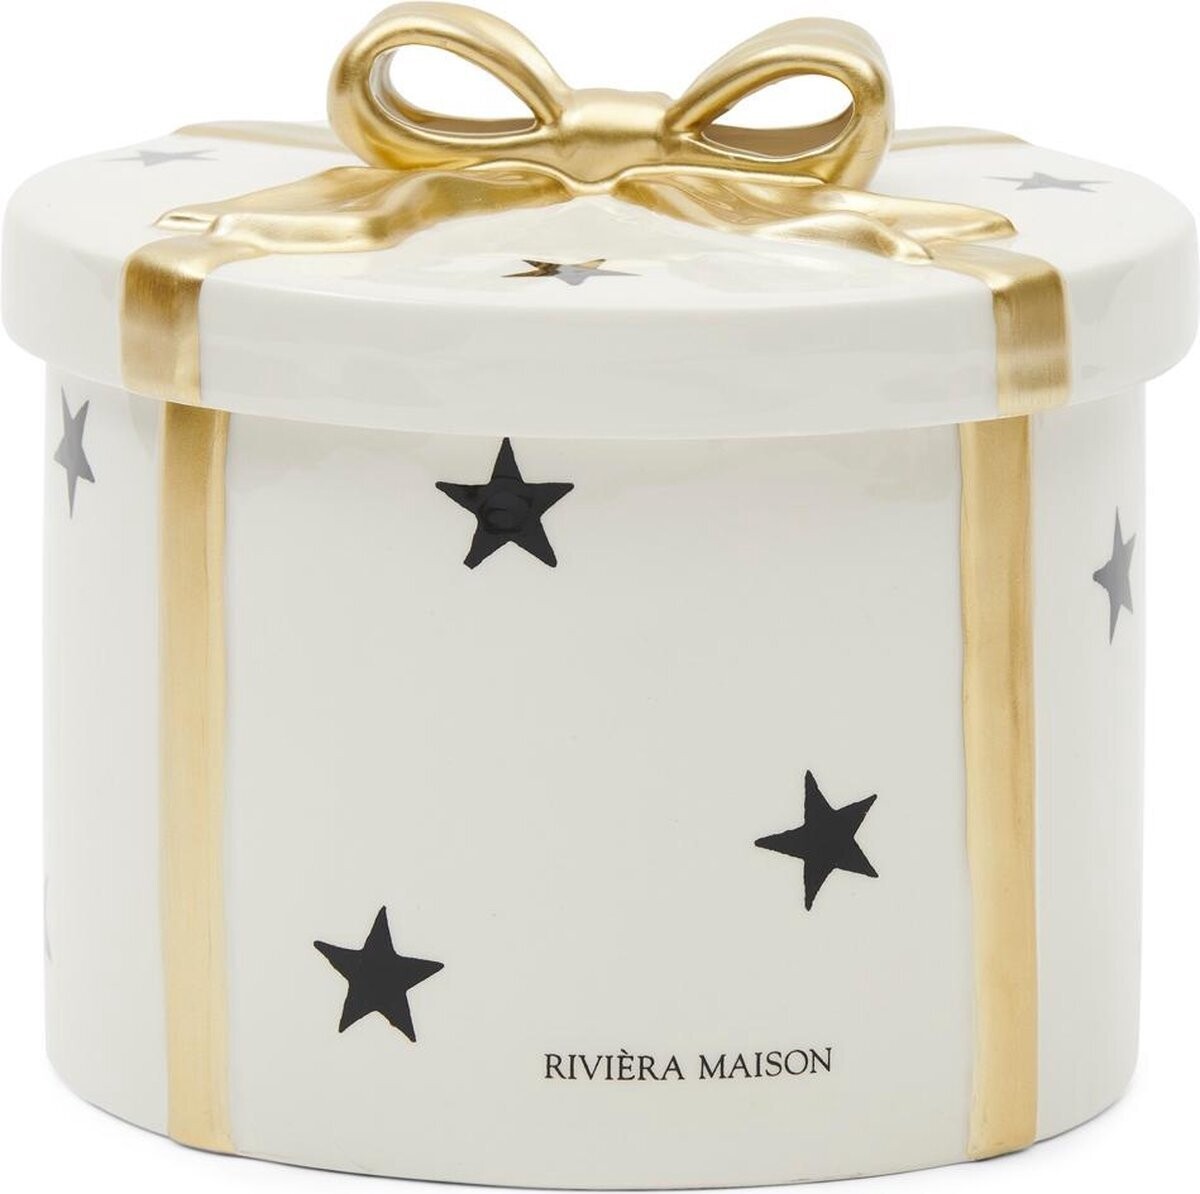 RM Christmas Box